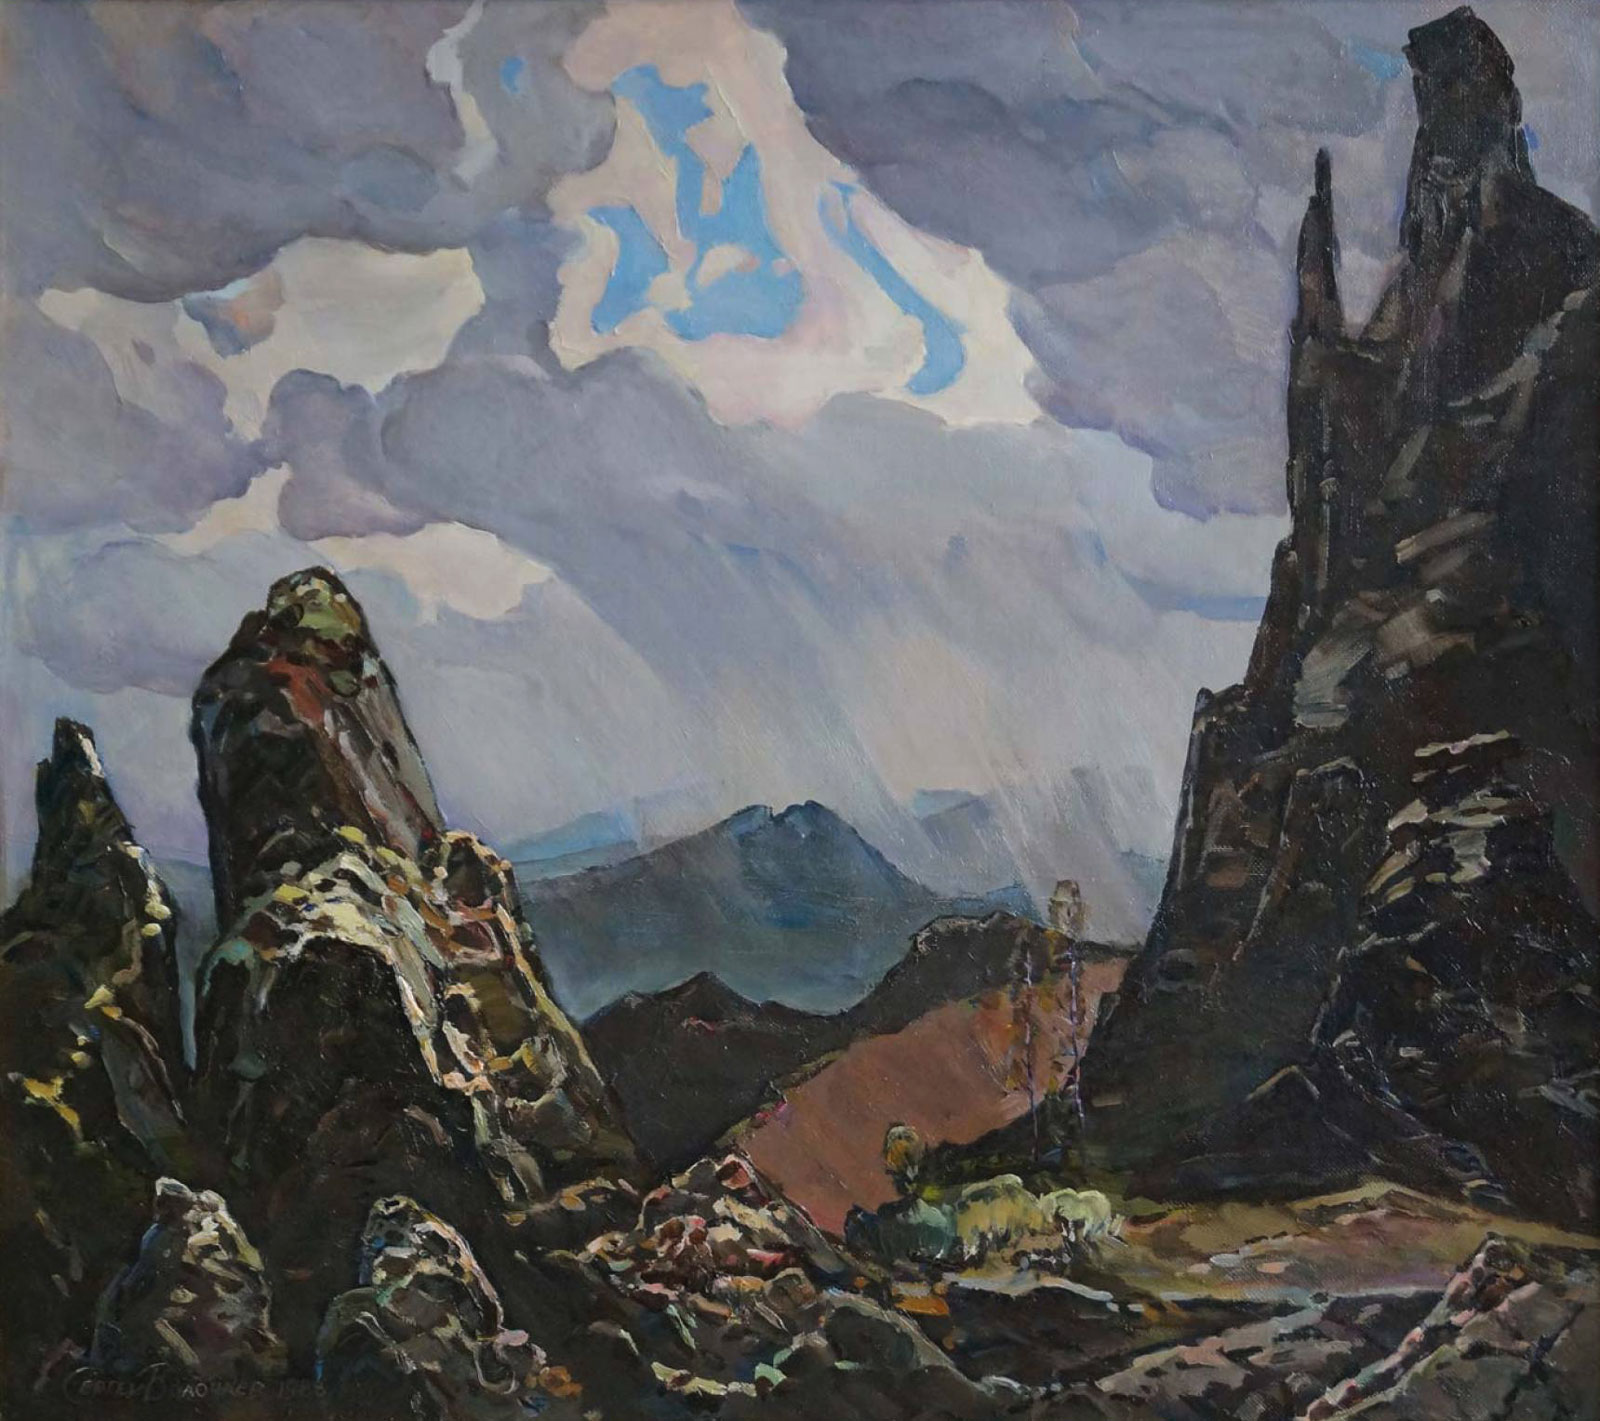 Northern Ural - 1, Sergei Volochaev, Buy the painting Oil